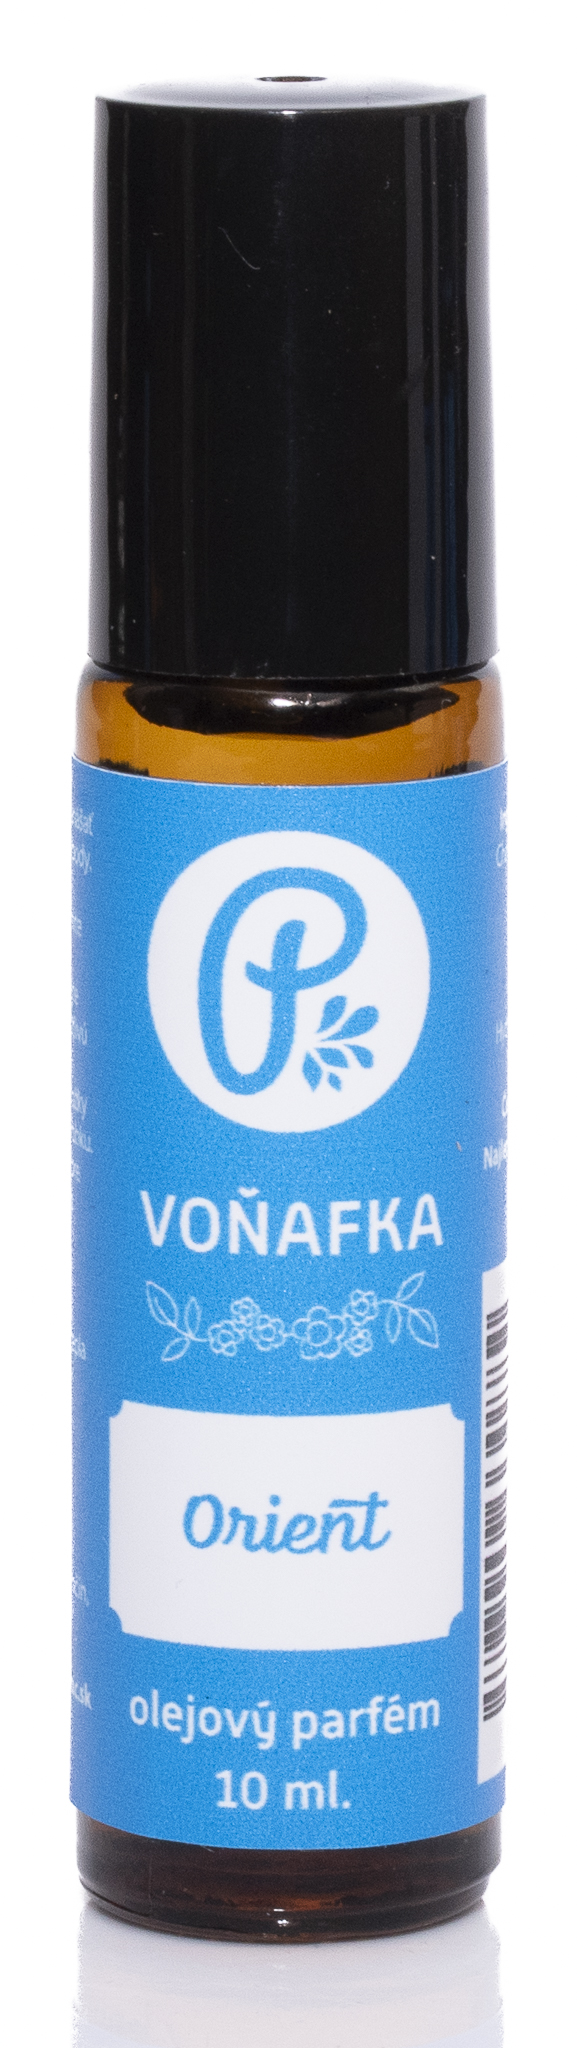 PANAKEIA Voňafka - Orient 10ml olejový parfém